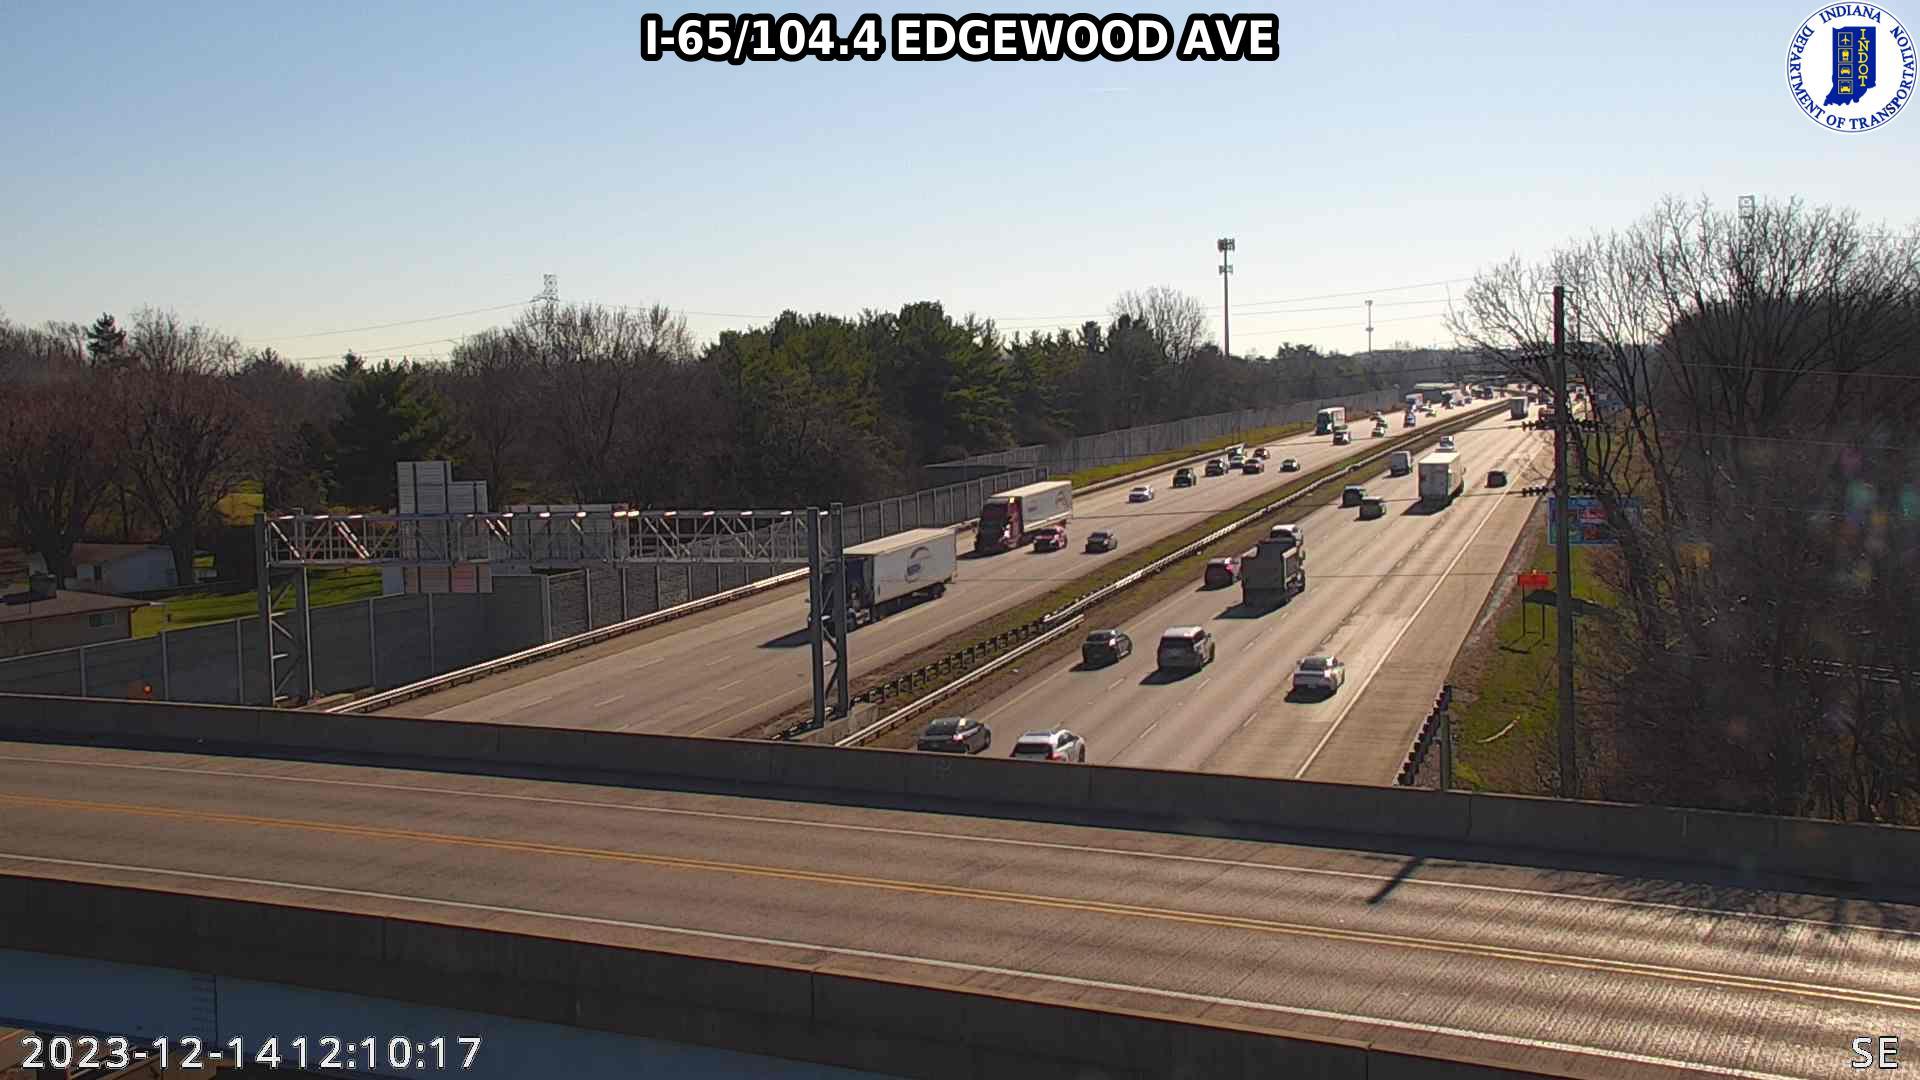 Indianapolis: I-65: I-65/104.4 EDGEWOOD AVE Traffic Camera